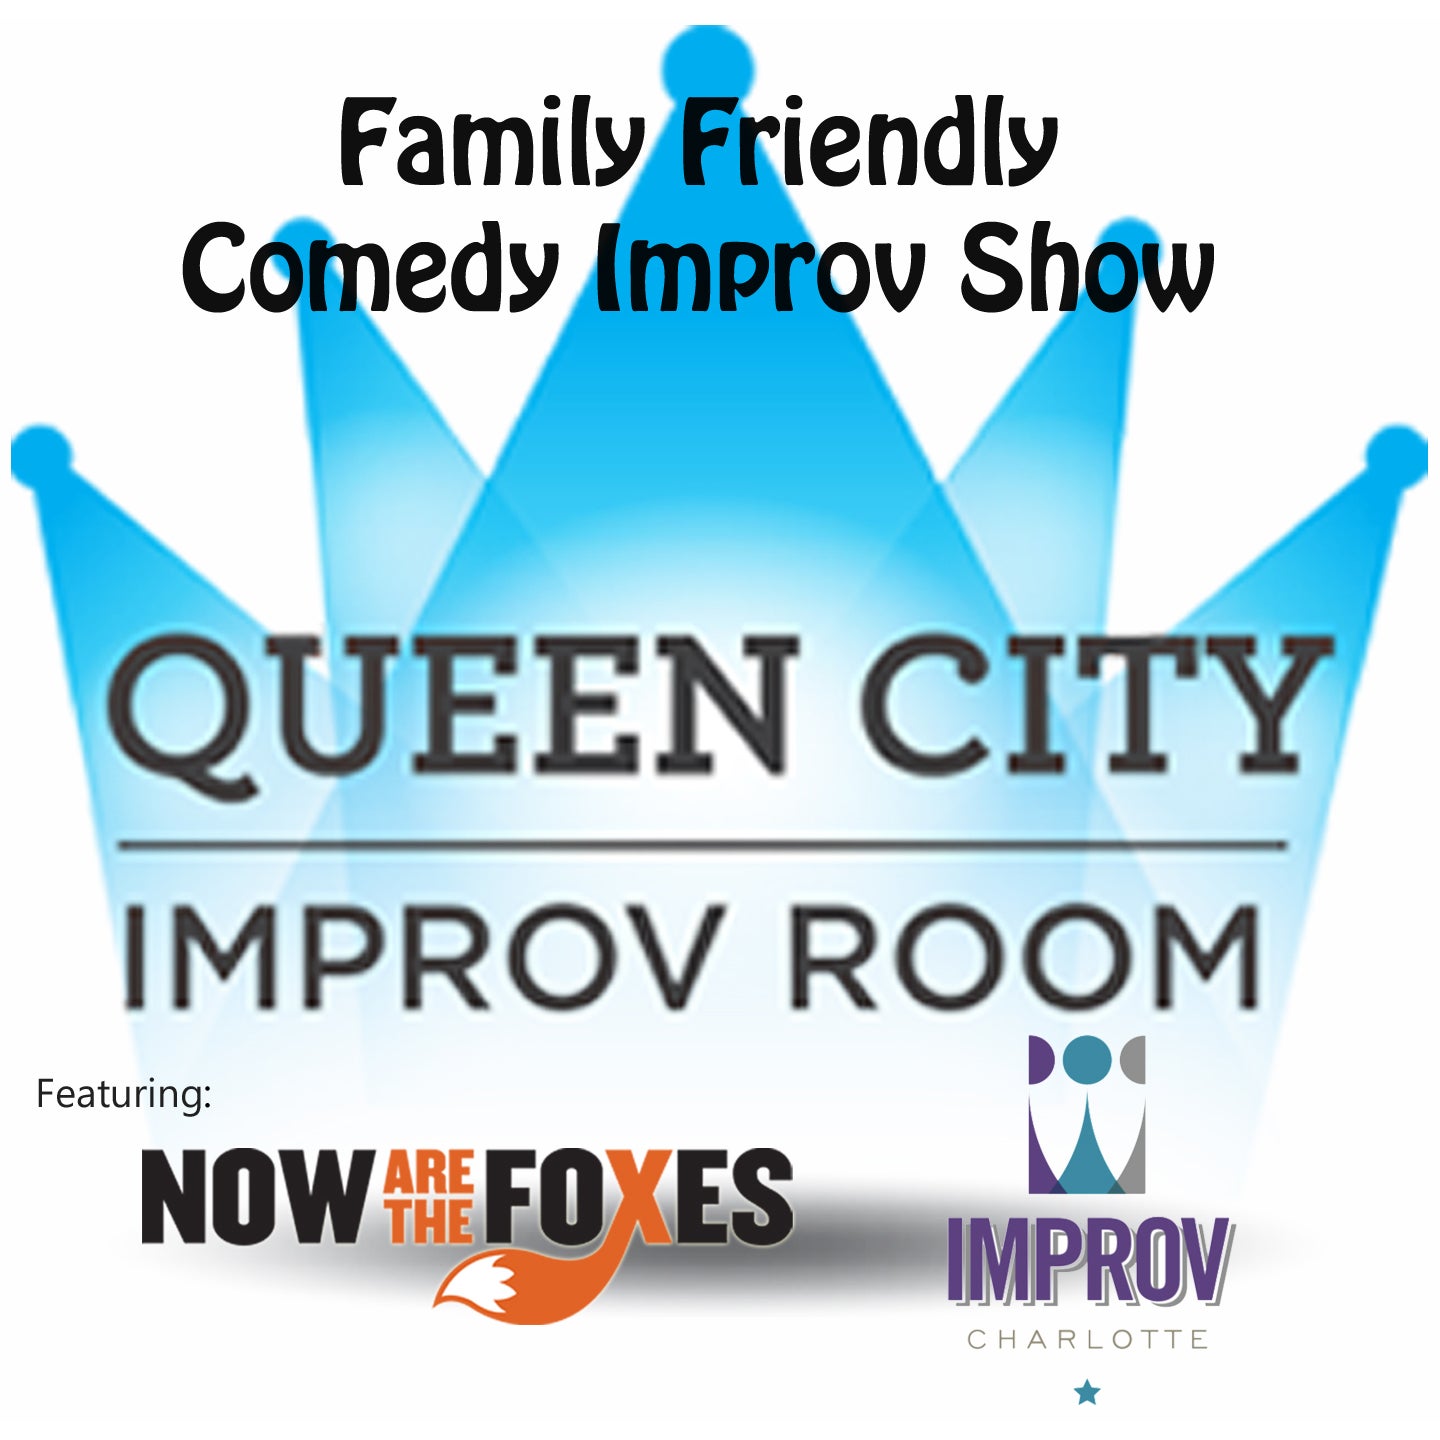 Queen City Improv Room: Family Friendly Improv Show